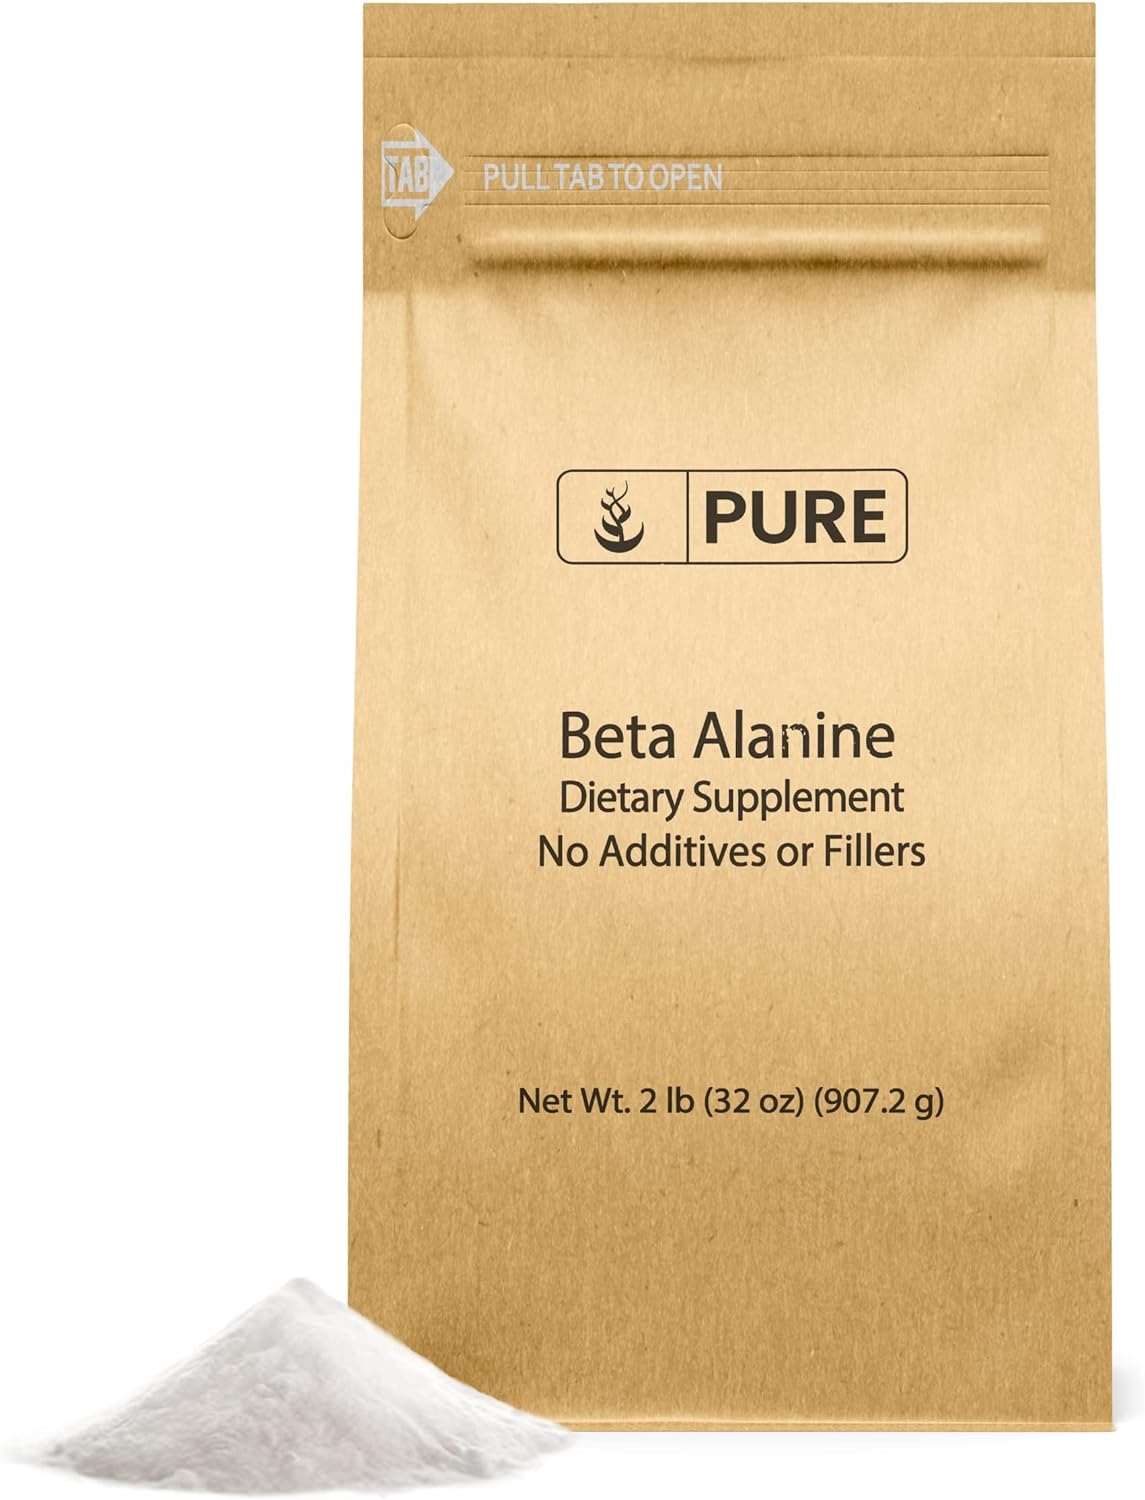 Beta Alanine Powder (2lb), Always Pure Non-Essential Amino Acid, Gluten-Free, Non-GMO